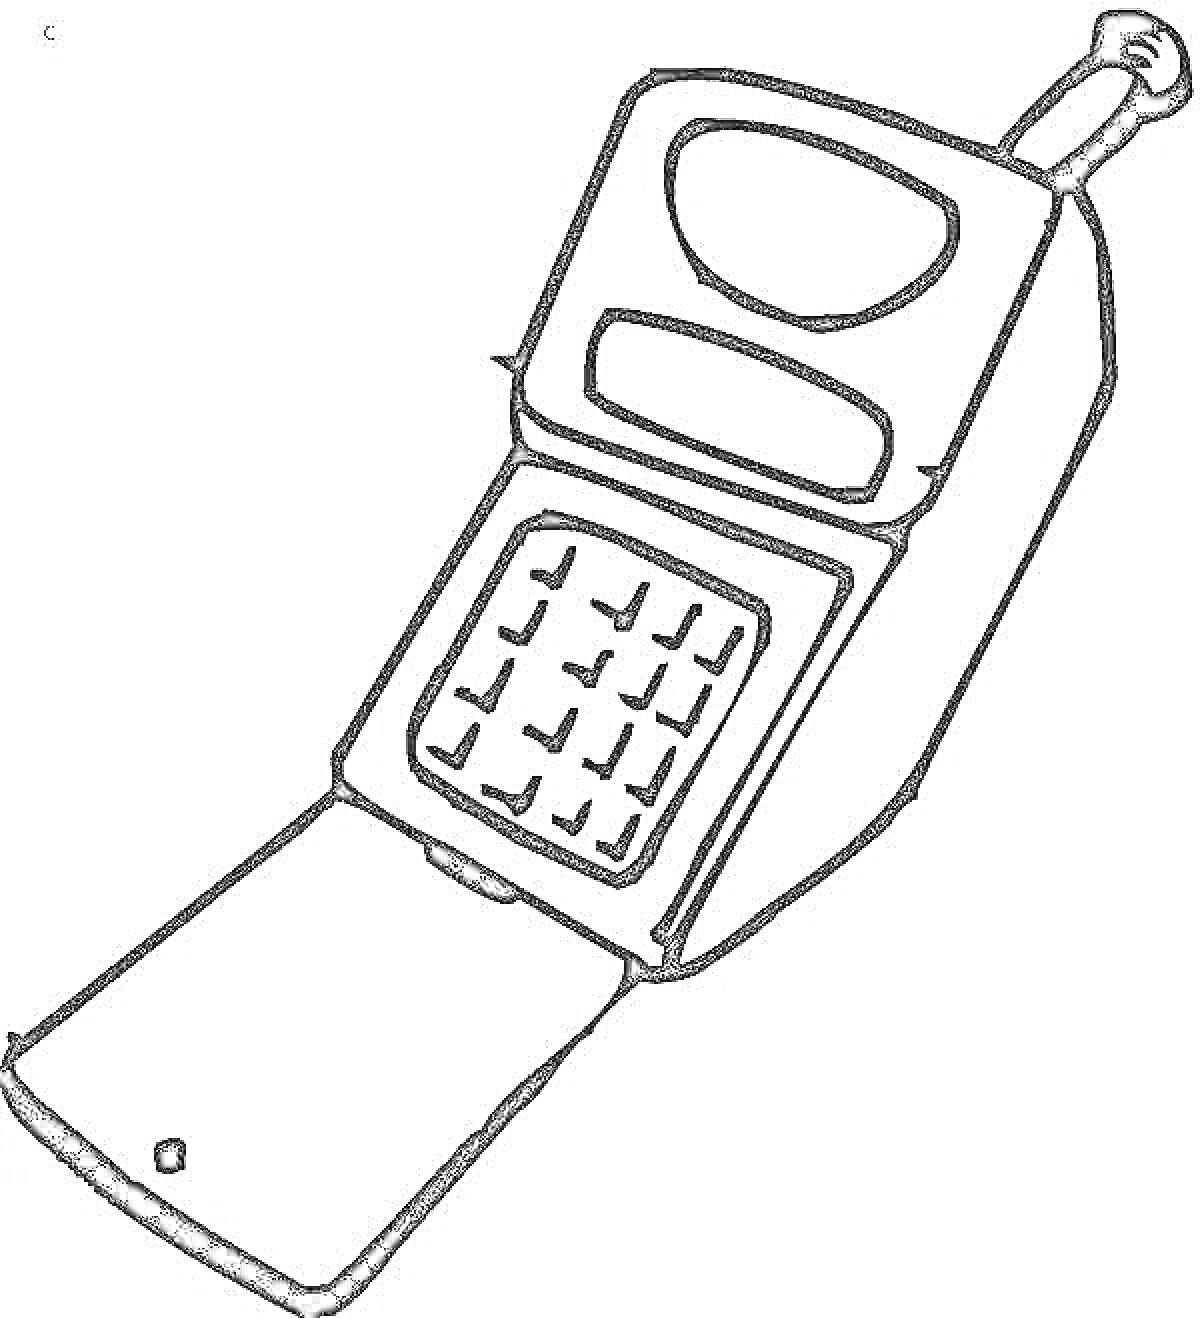 Раскраска Раскрытый кнопочный мобильный телефон с антенной и экраном